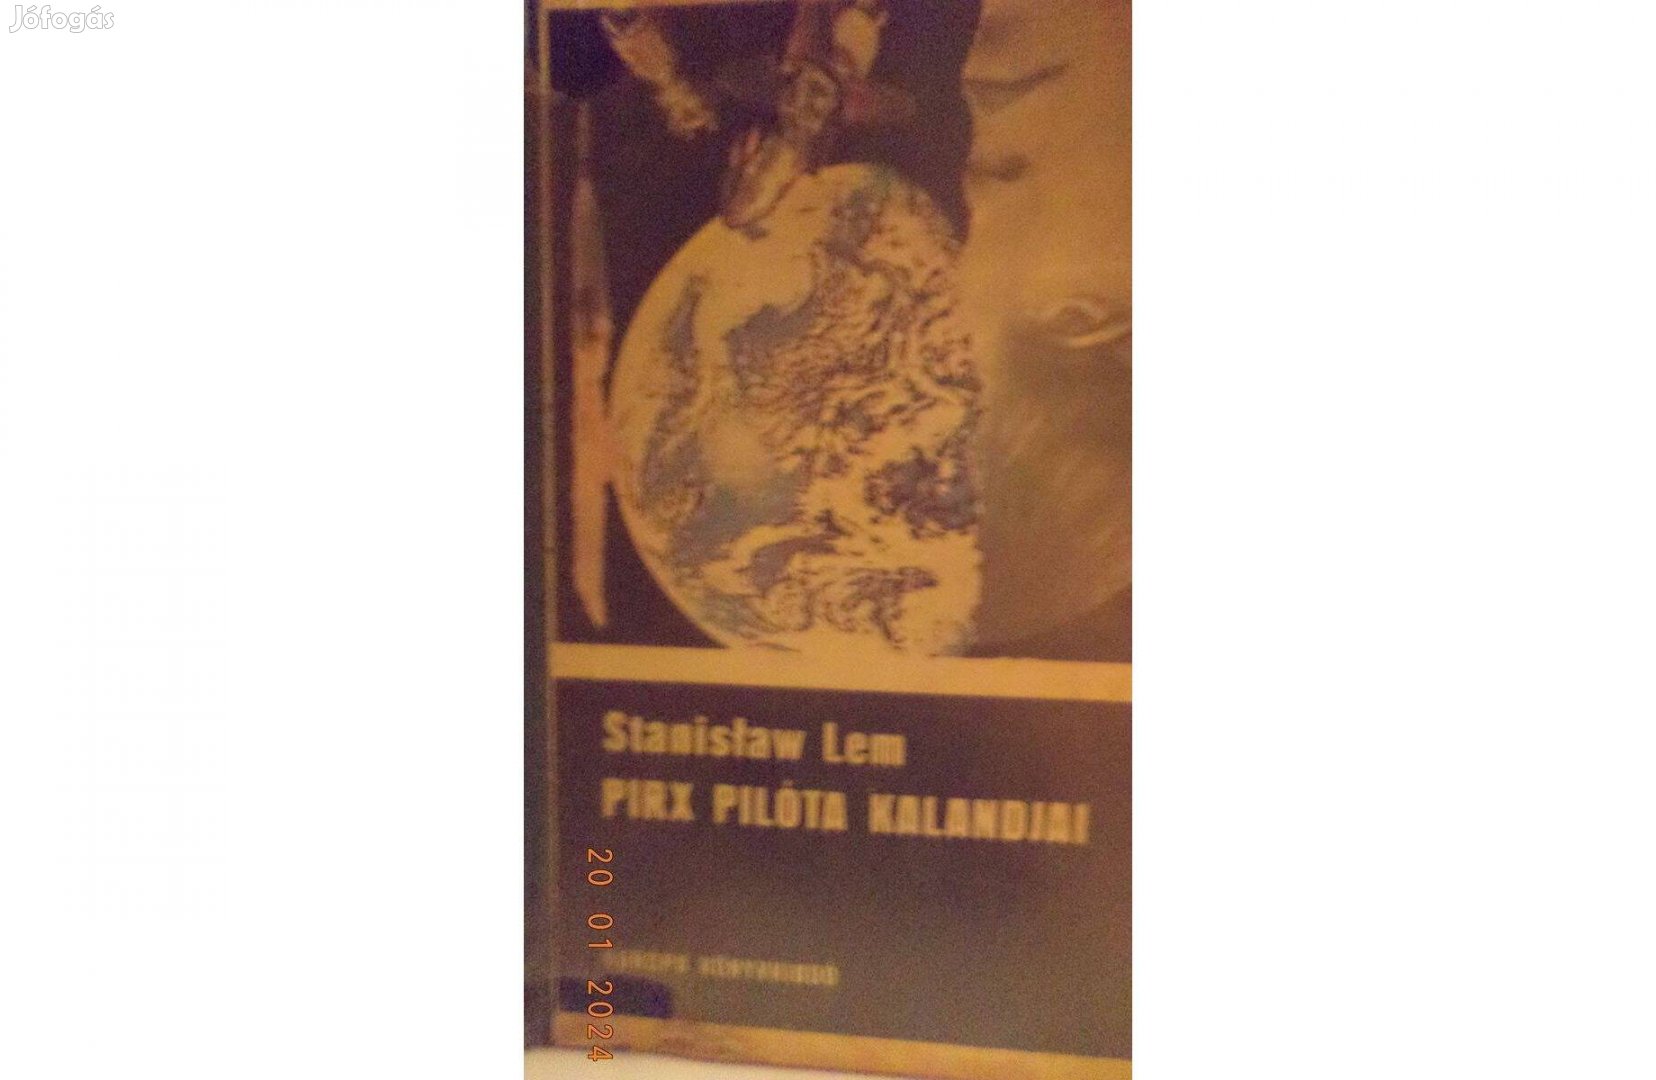 Stanislaw Lem: Pirx pilóta kalandjai